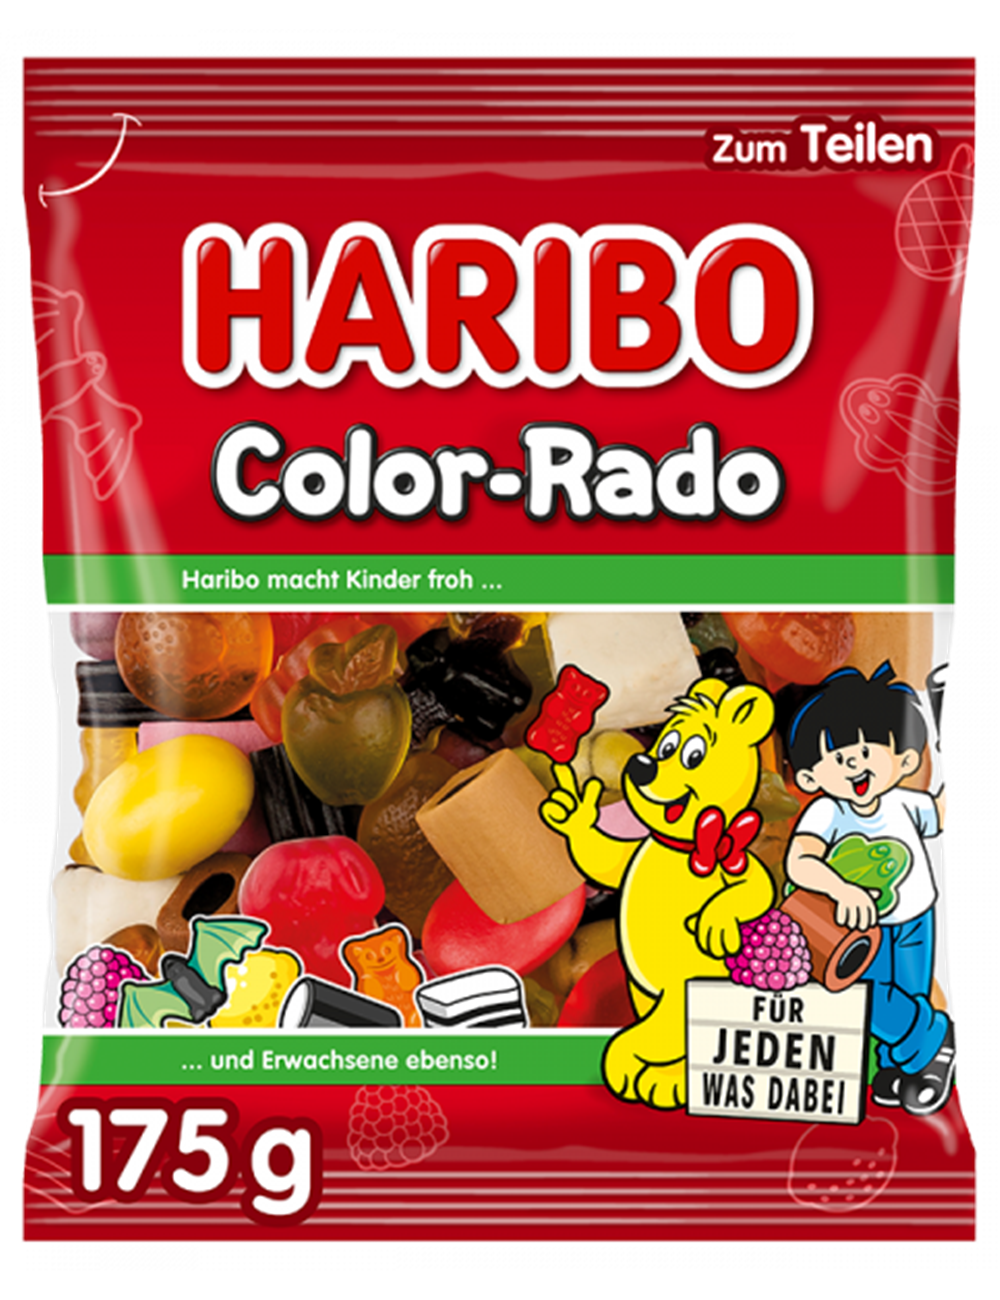 Haribo Żelki Color-Rado 175 g (DE)